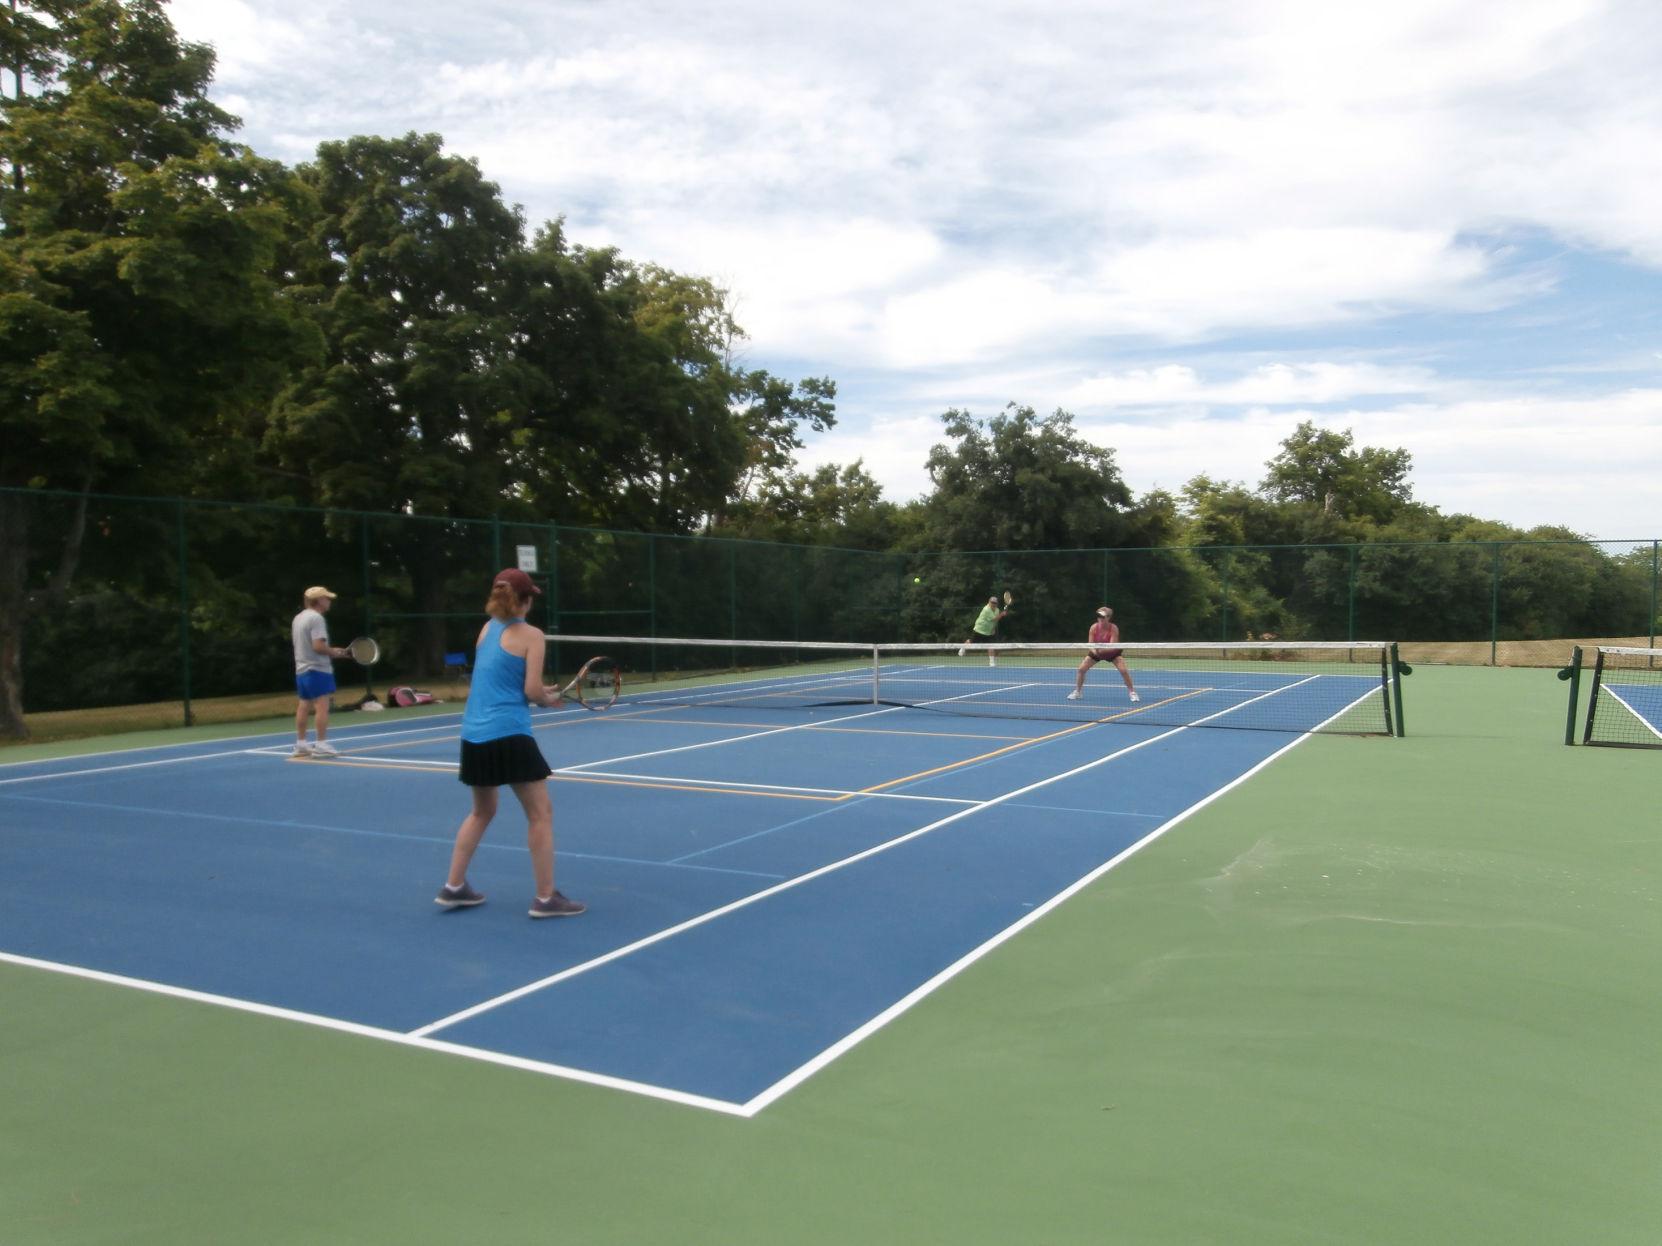 City crews spruce up tennis courts | News | nny360.com